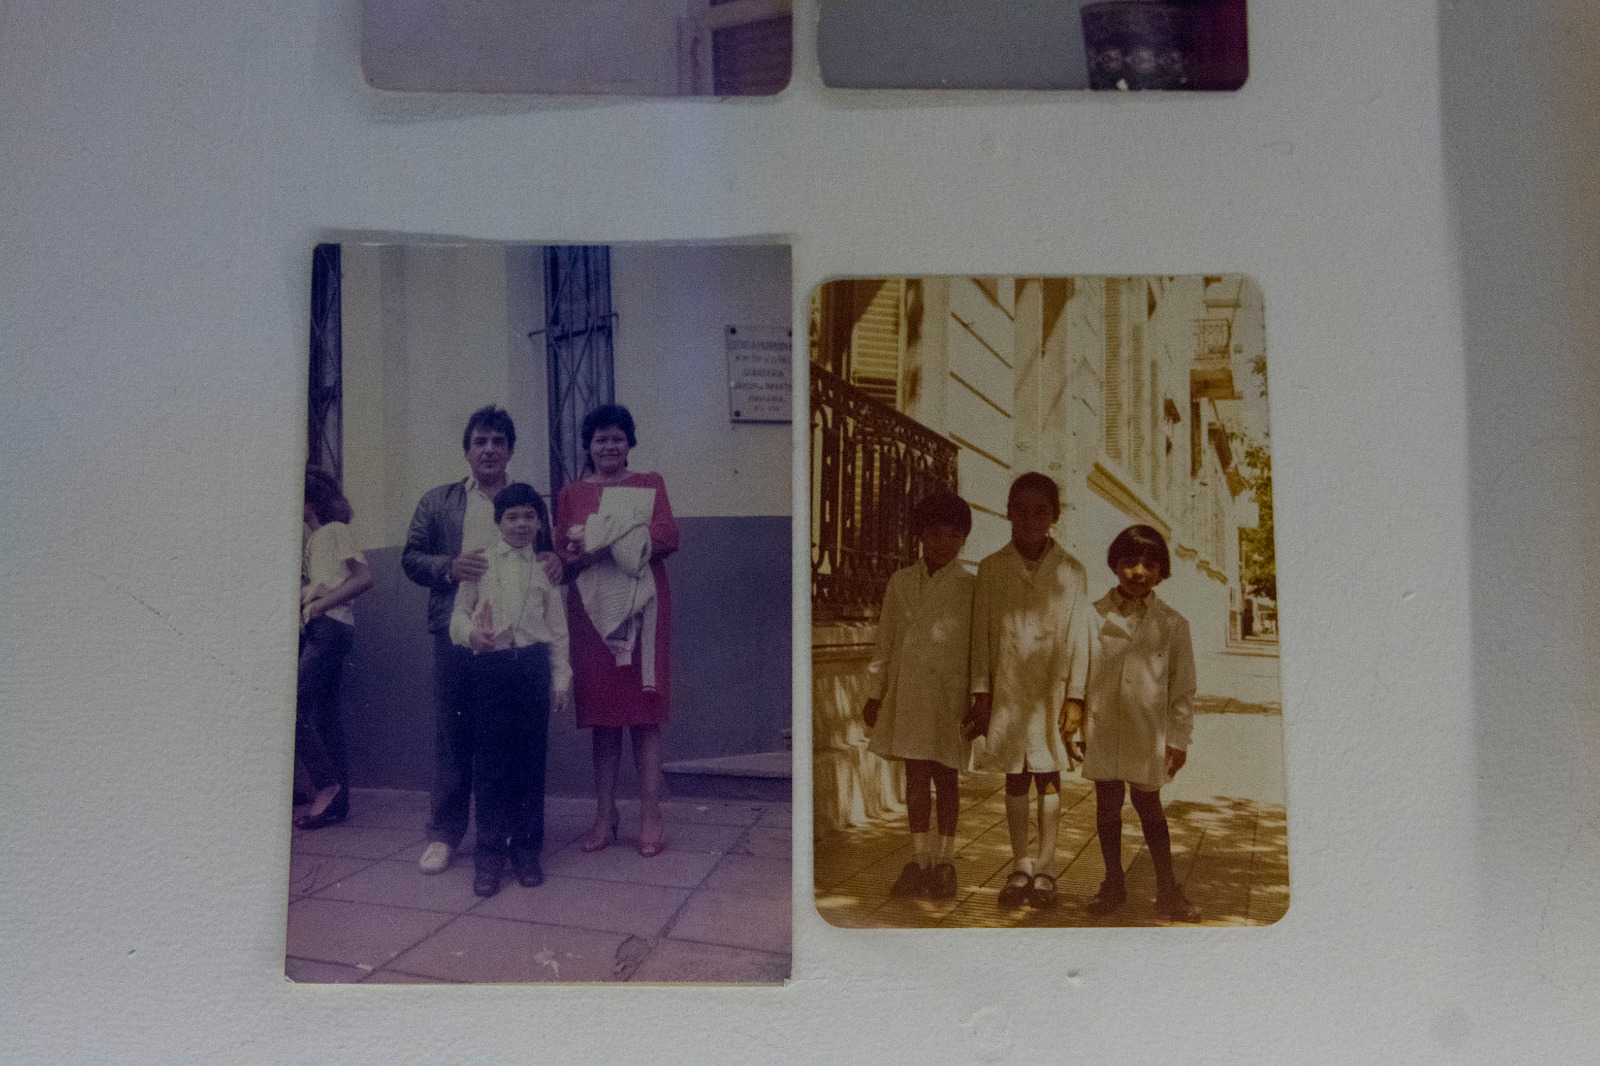 Fotos familiares de Lorena Vega. Parte de la muestra “Imprenteros, de Lorena Vega y Hnos.” en exhibición en la Casa Nacional del Bicentenario.